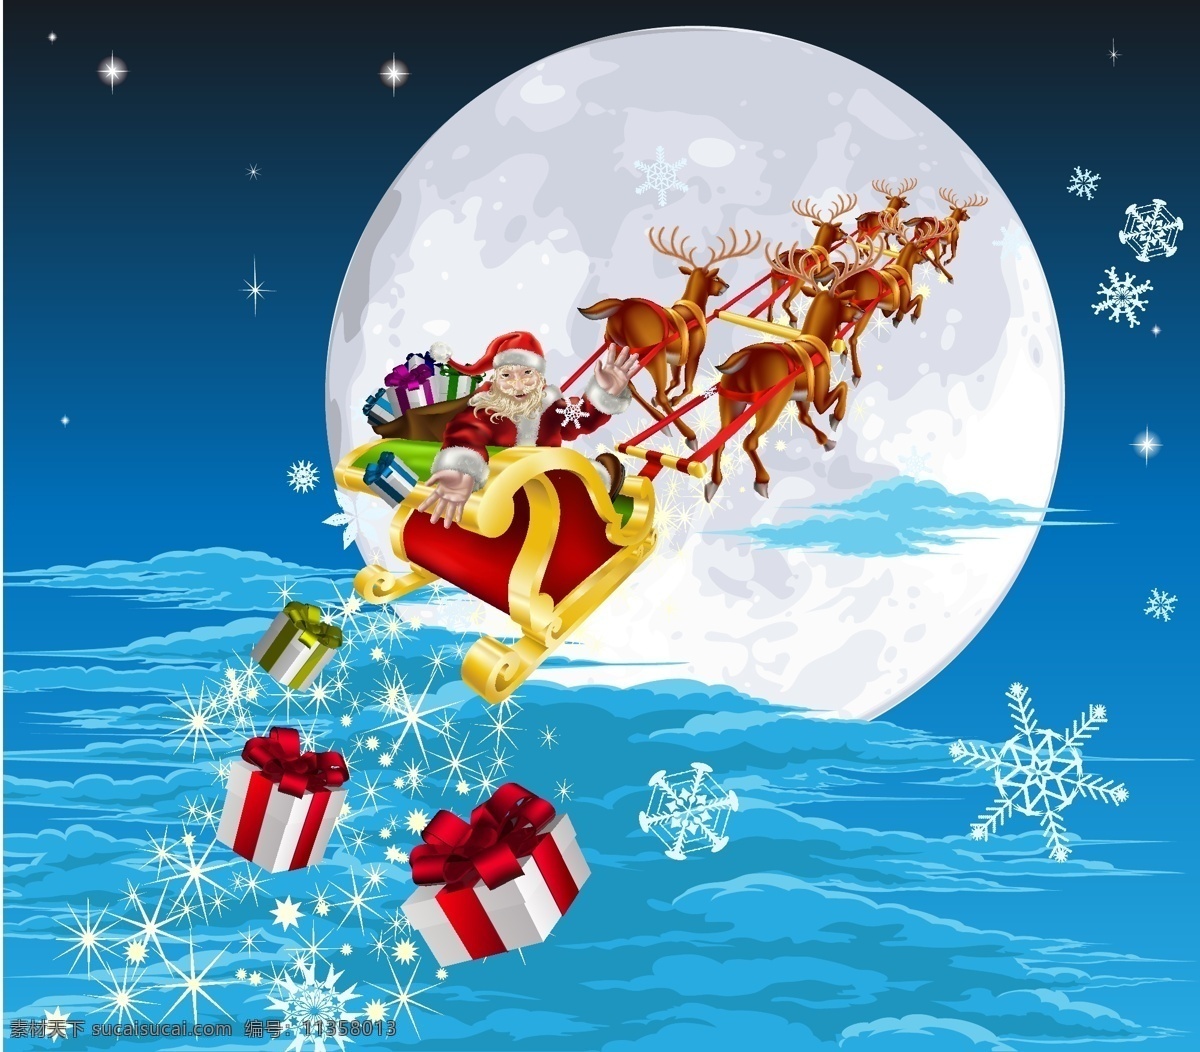 圣诞老人 驯鹿 主题 矢量 可爱 蓝色 礼盒 礼品 礼物 圣诞节 圣诞帽 矢量素材 矢量图 雪橇 星光 小鸟 信纸 纸卷 椅子 松树 雪花 节日素材